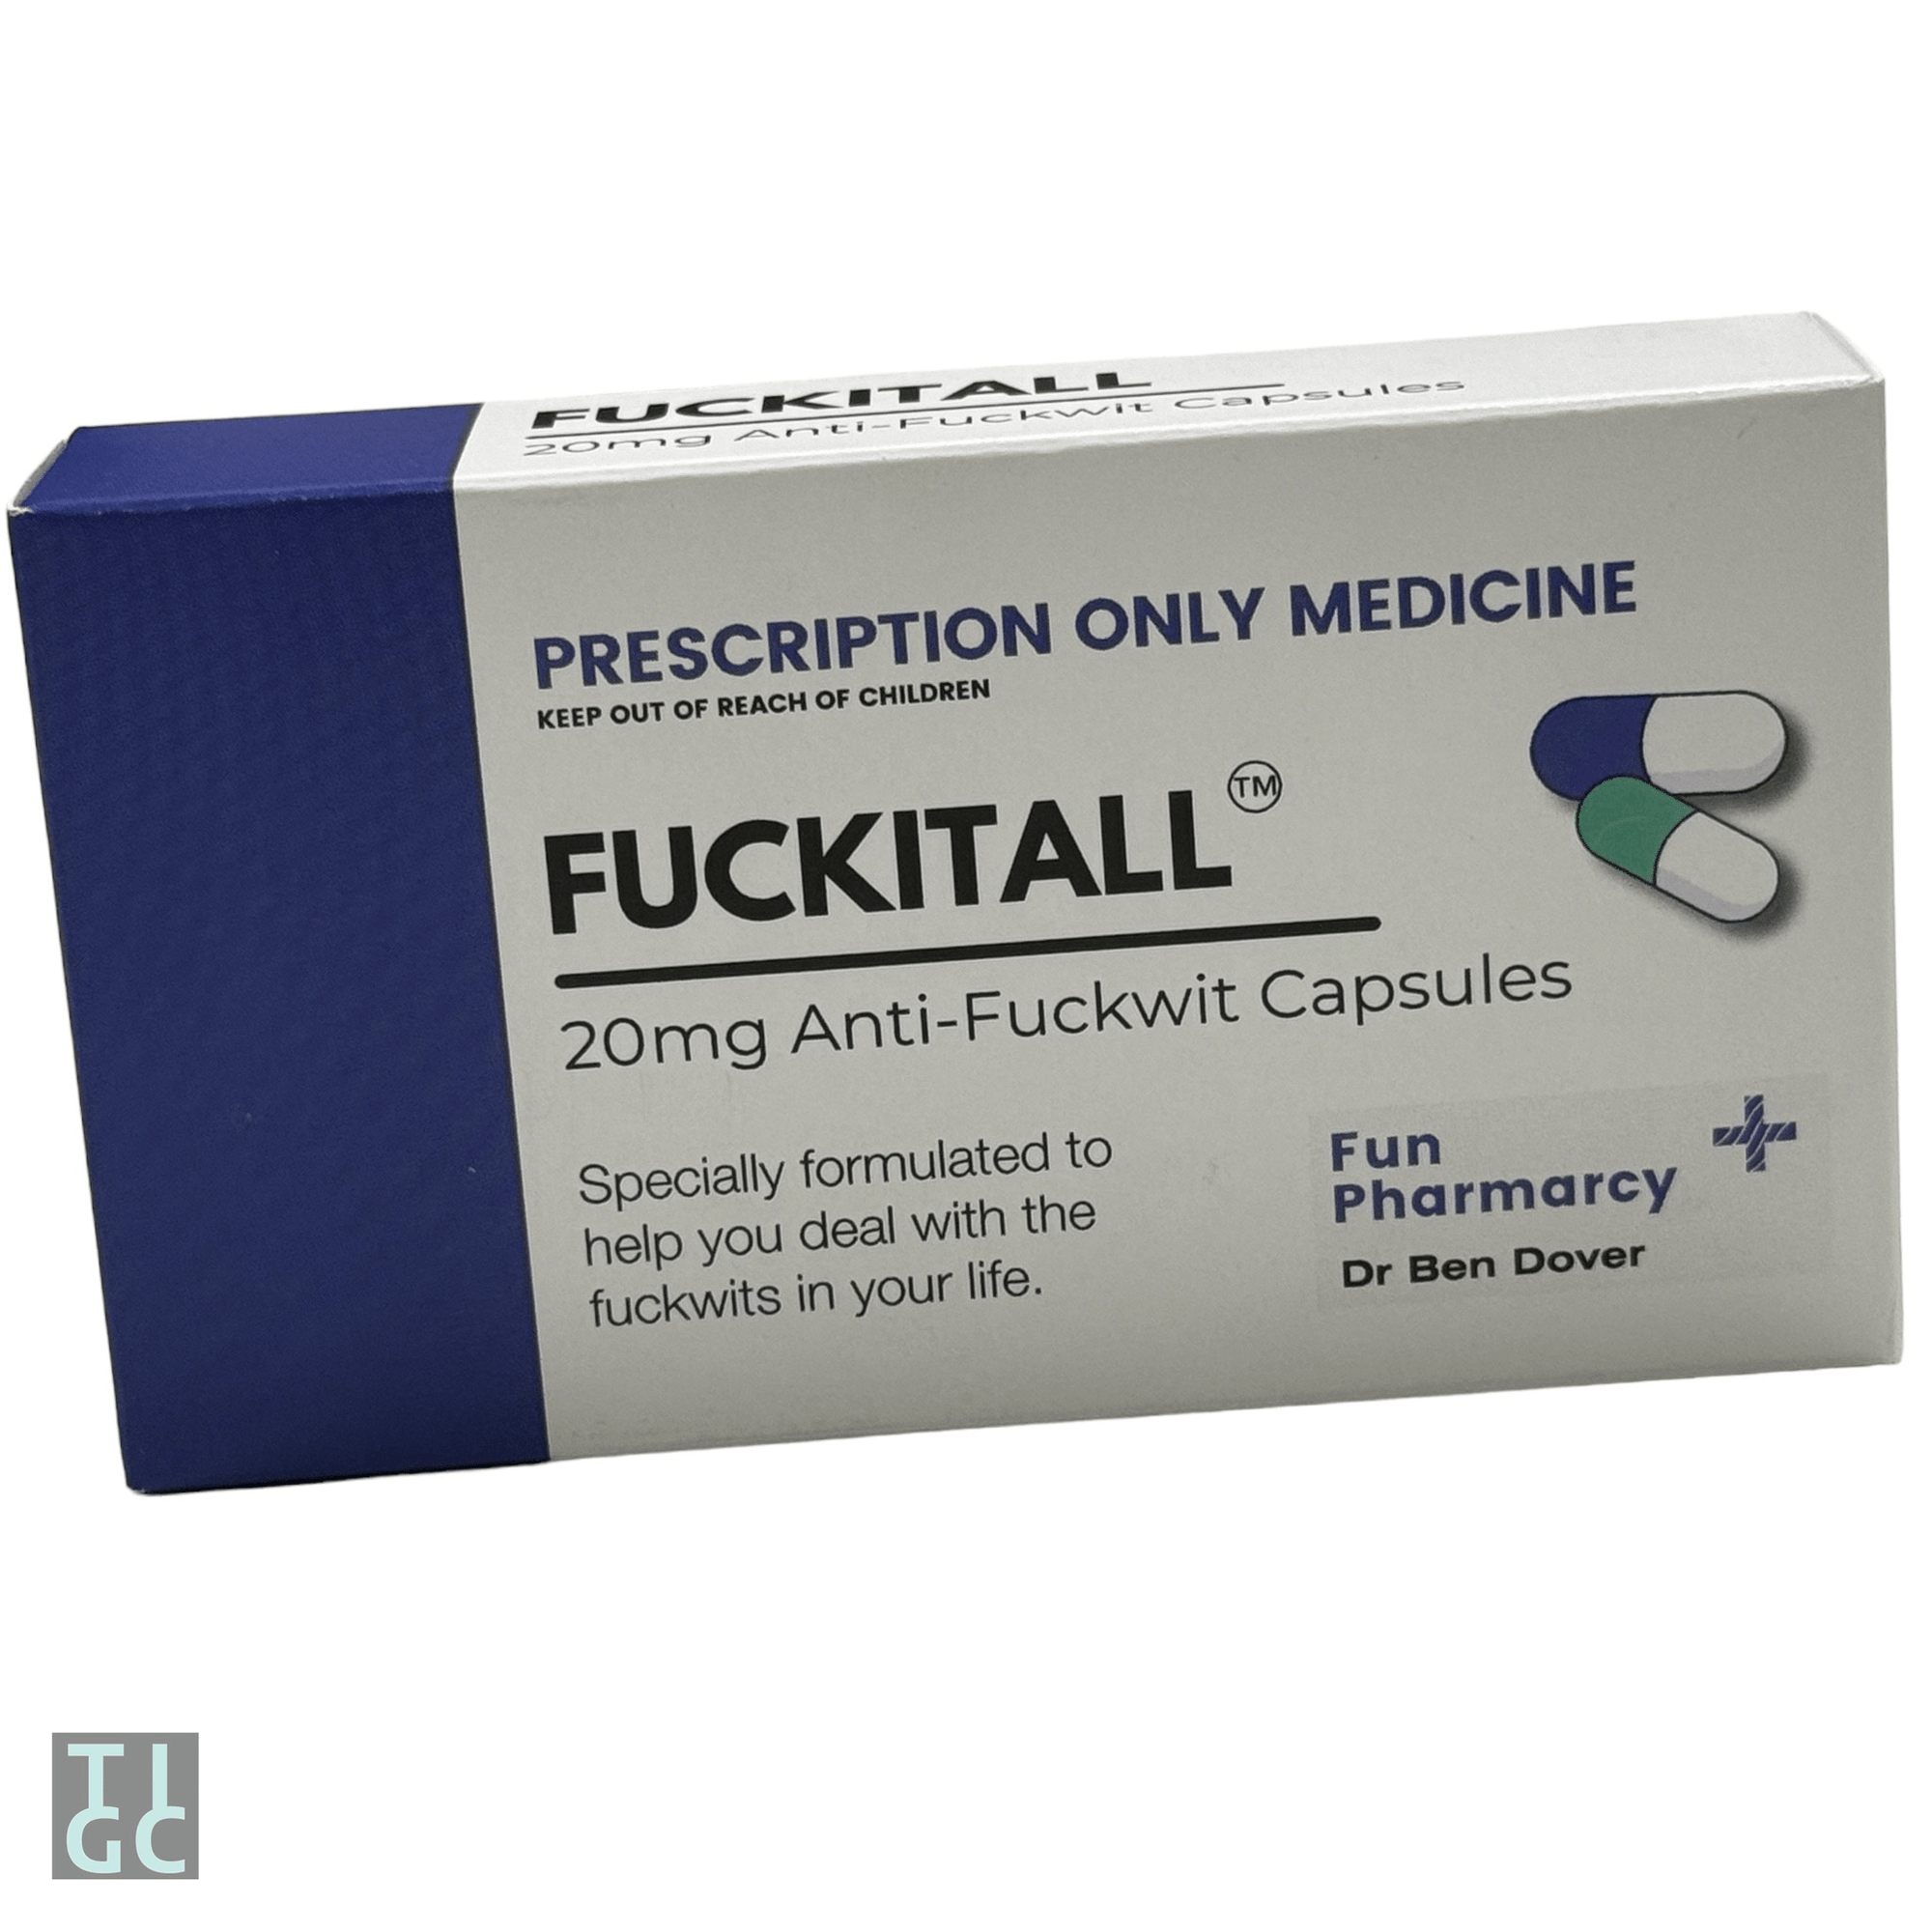 Fuckitall prank pill box